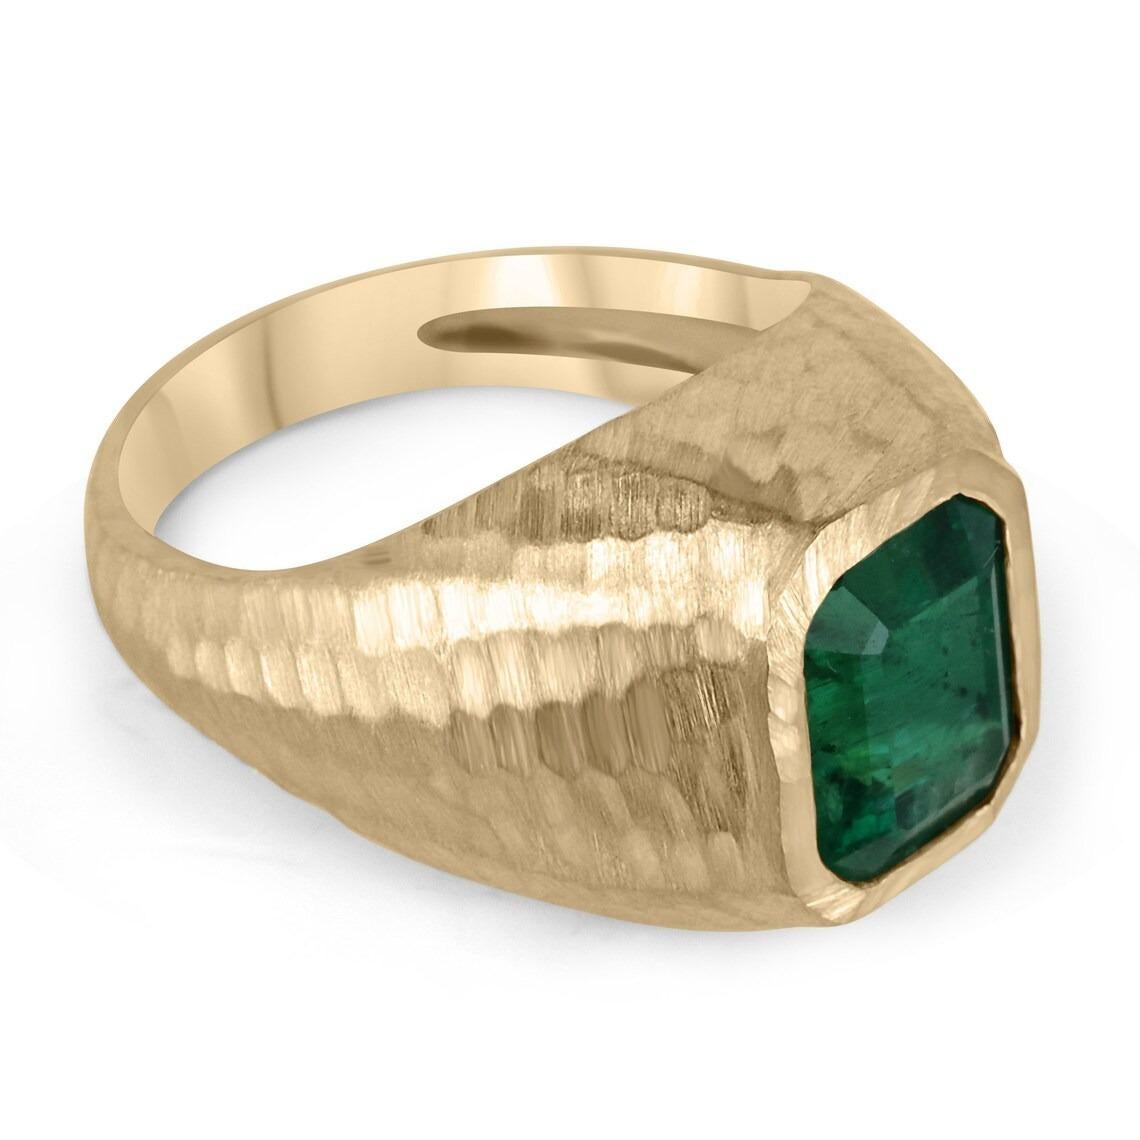 Dieser elegante Solitär-Goldring für Männer sagt alles. Dieser Ring ist aus den feinsten, echten Materialien unserer Smaragdkollektion gefertigt. Der Edelstein im Smaragdschliff ist natürlich und kommt aus der Erde. Der Edelstein in diesem Ring ist